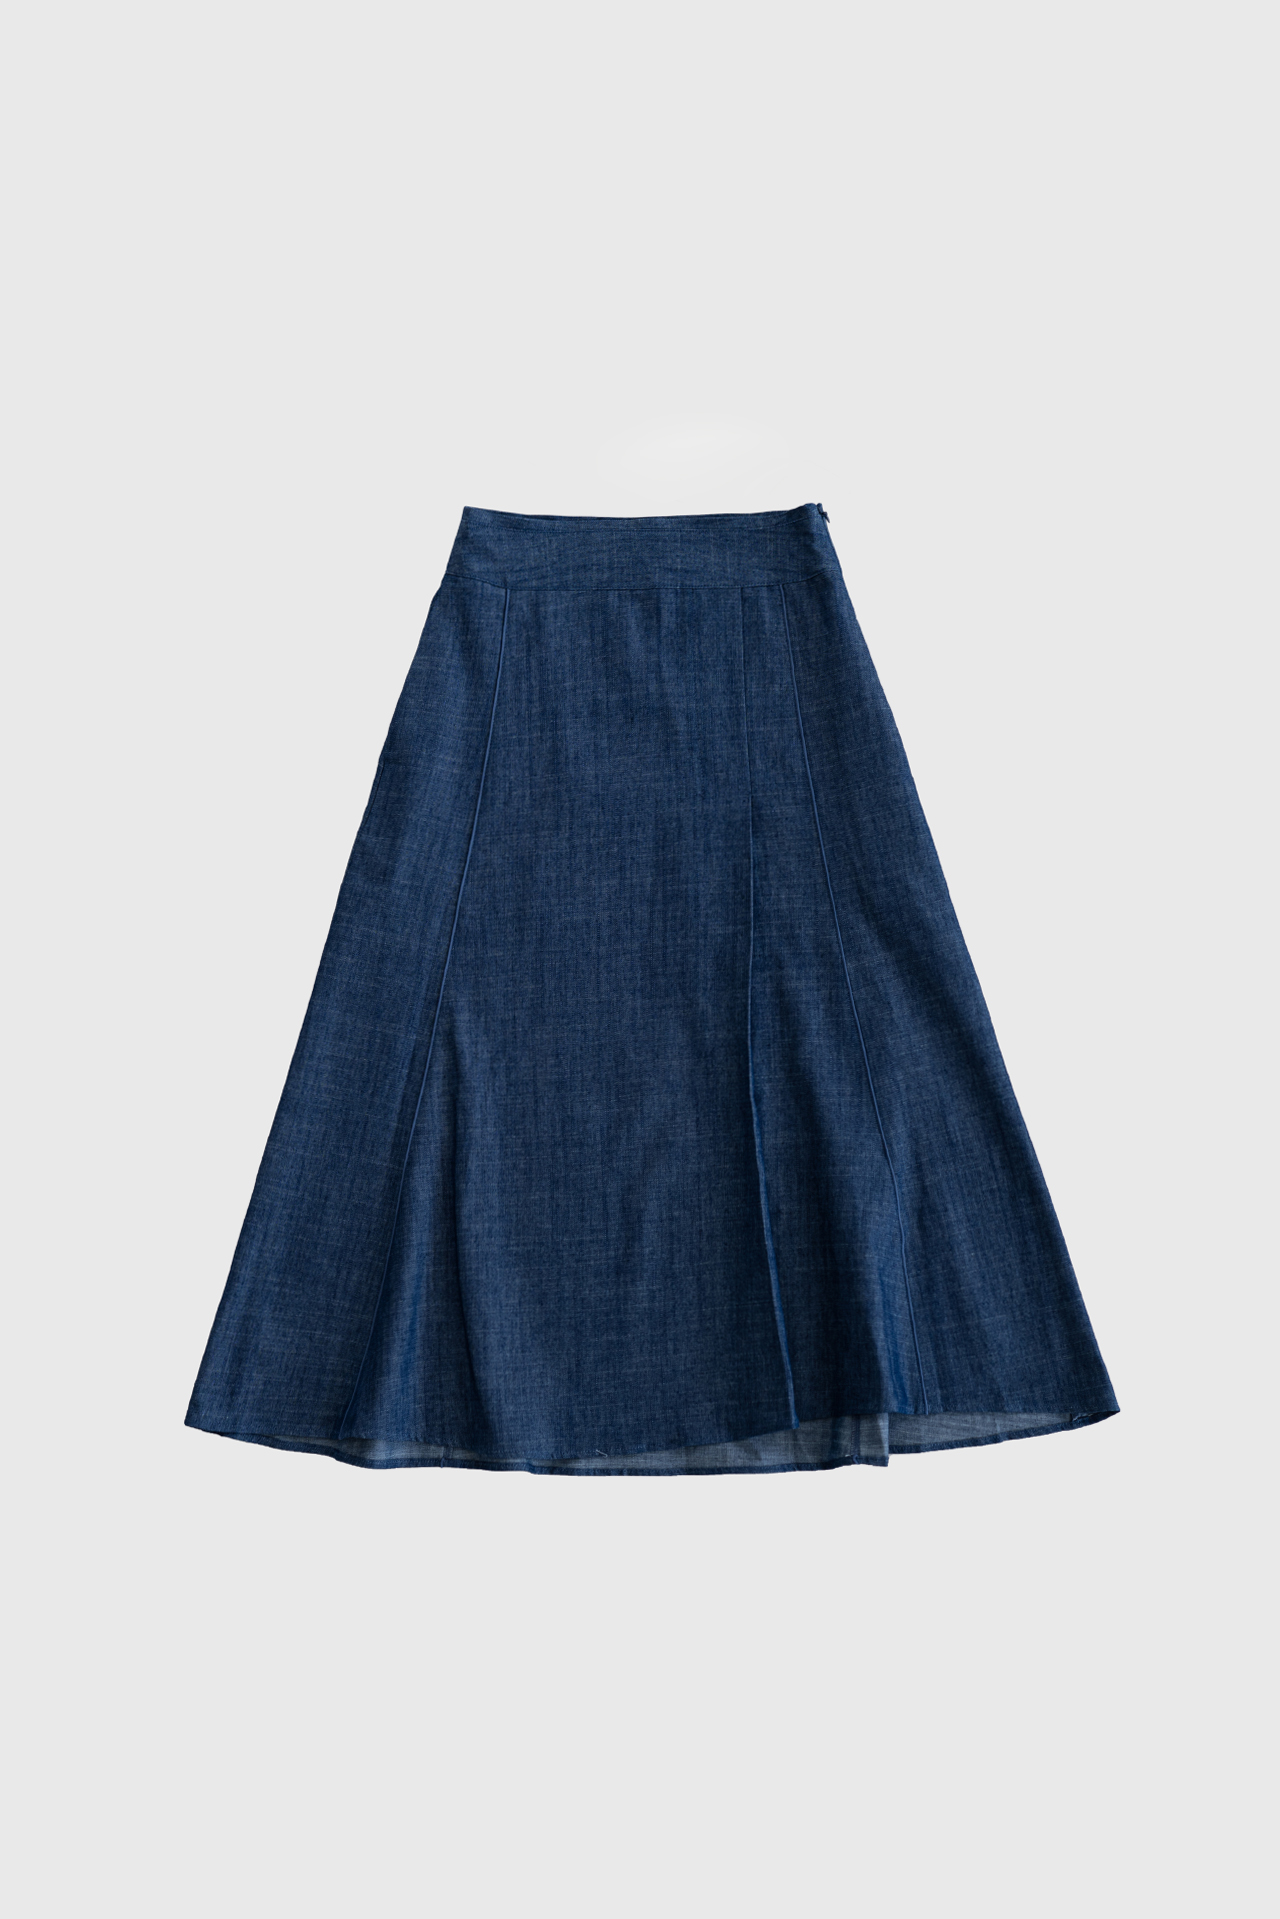 17624_Summer Denim Skirt